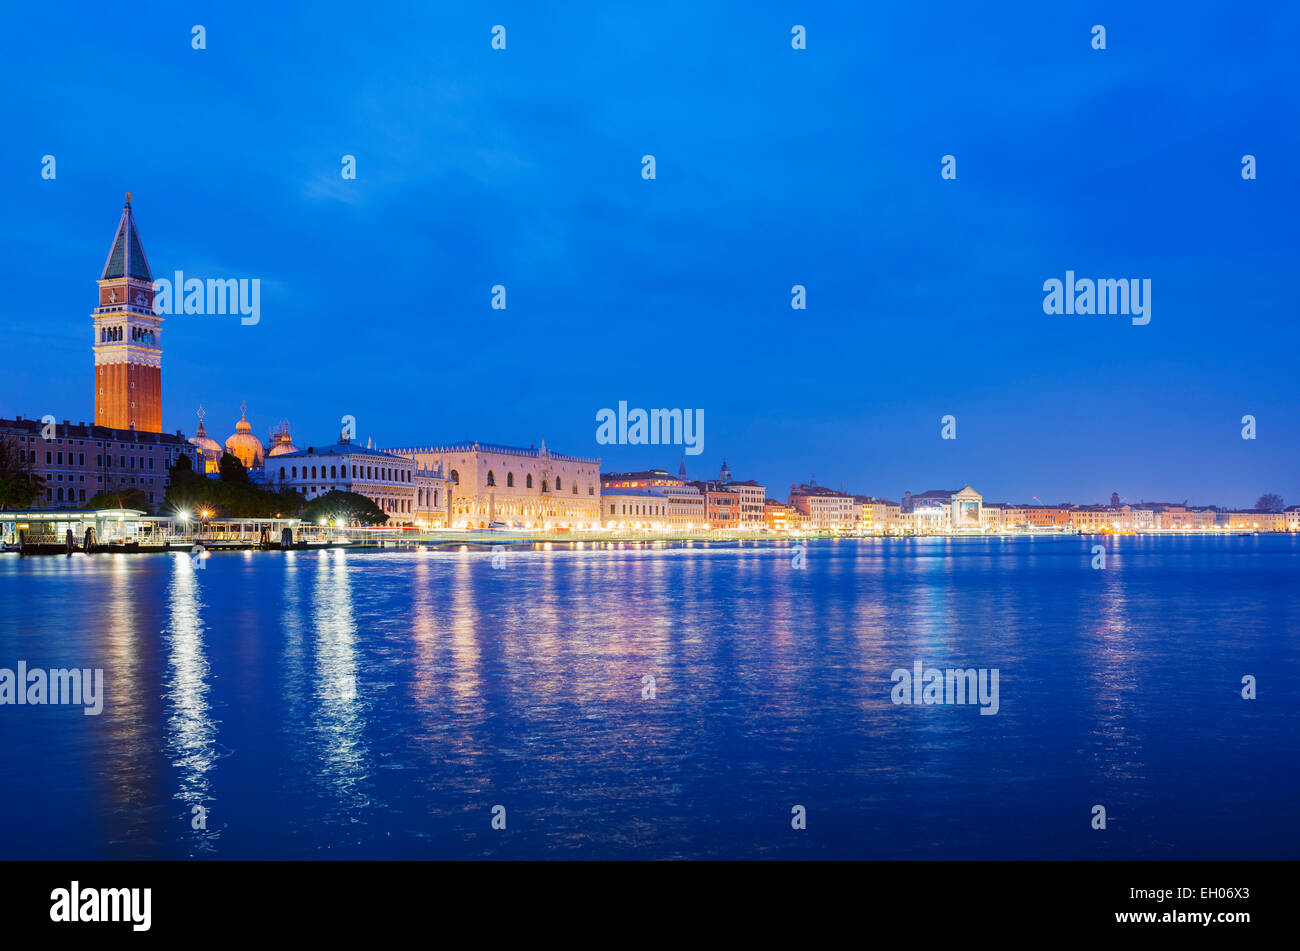 Europe, Italy, Veneto, Venice, Campanile di San Marco in Venice lagoon Stock Photo